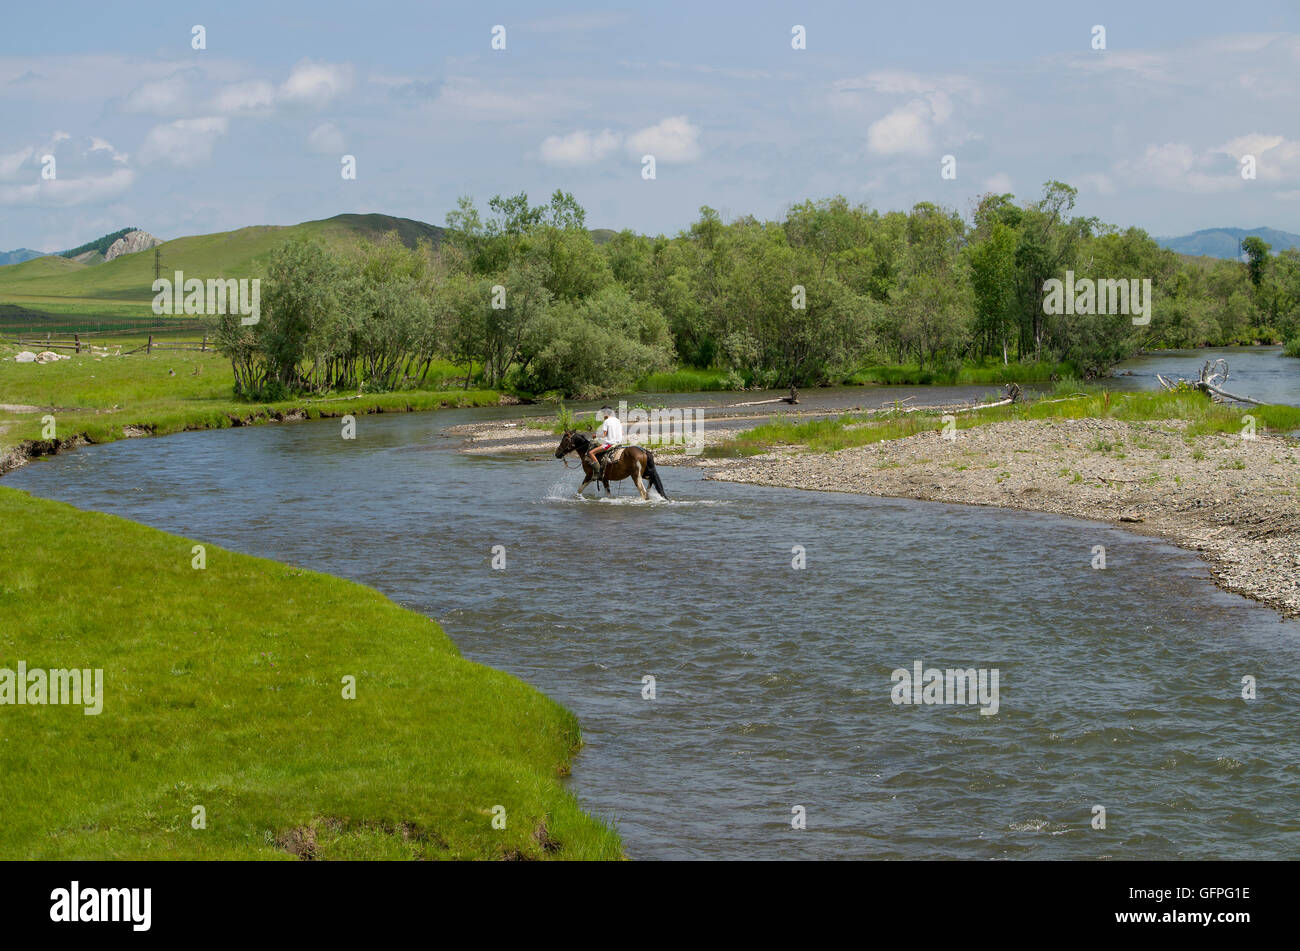 Le rider l'homme sur un cheval passe la rivière,un cheval de passer, un paysage, les montagnes, l'homme, la nature, la personne Banque D'Images